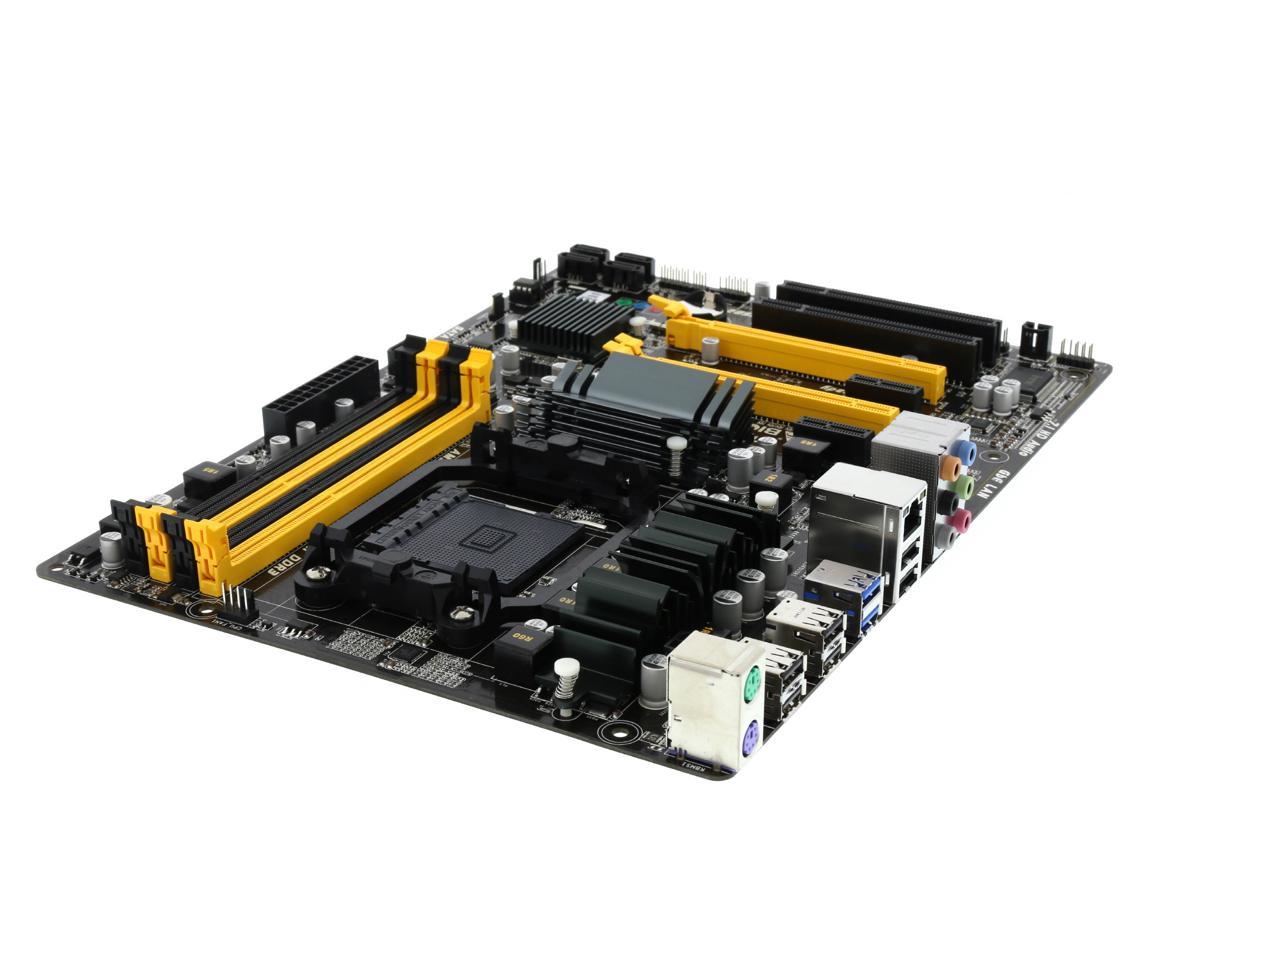 BIOSTAR TA970 Ver. 5.3 AM3+ ATX AMD Motherboard with UEFI BIOS - Newegg.com